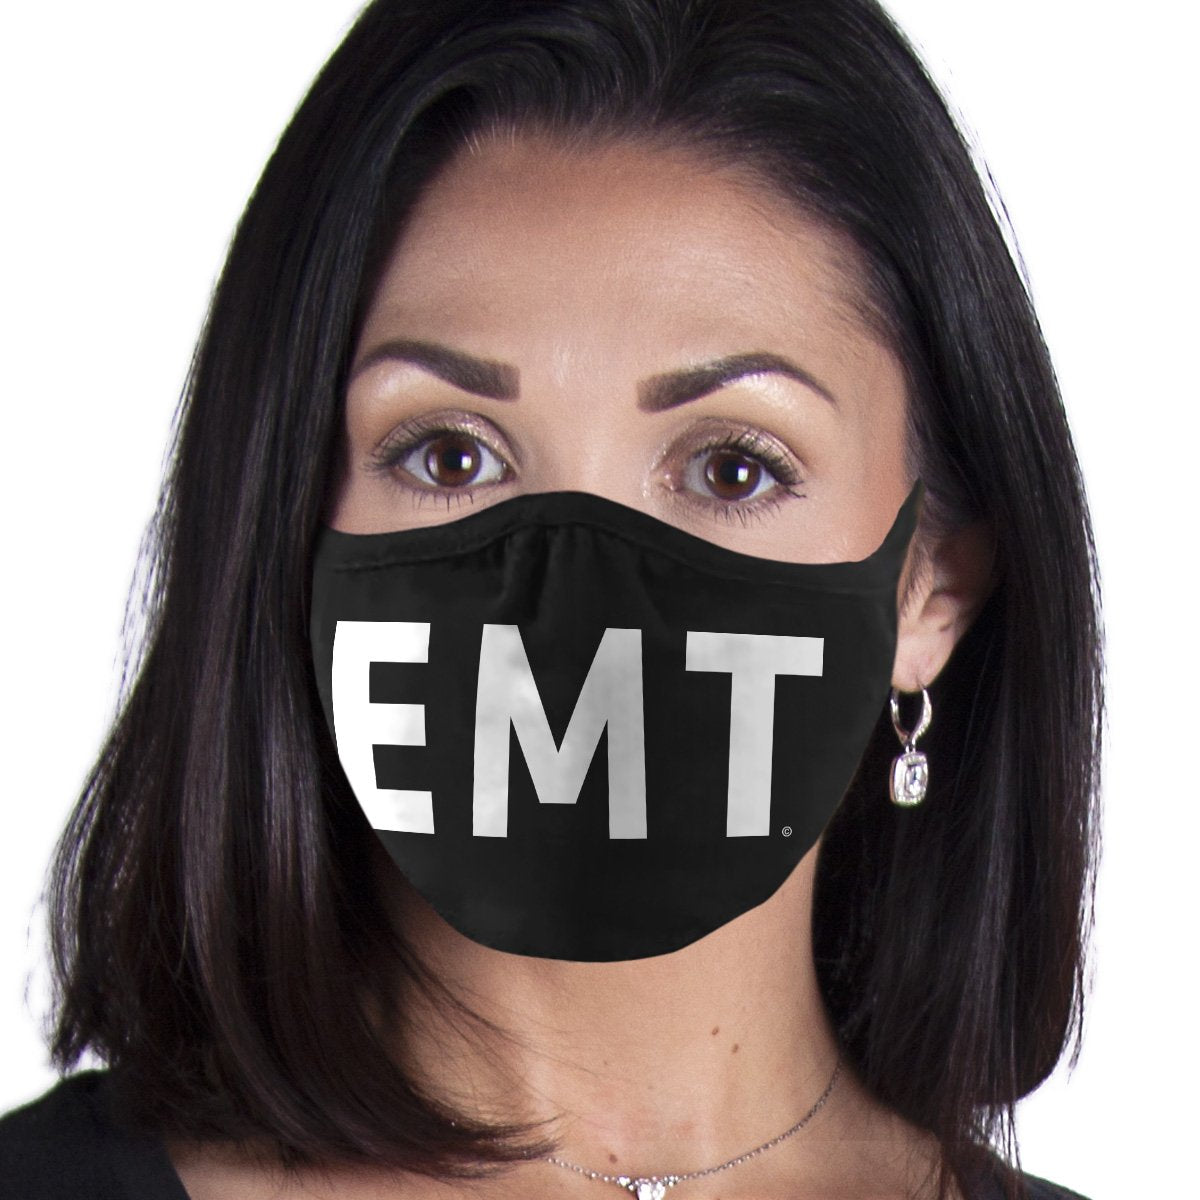 EMT FACE MASK Cover Your Face Masks